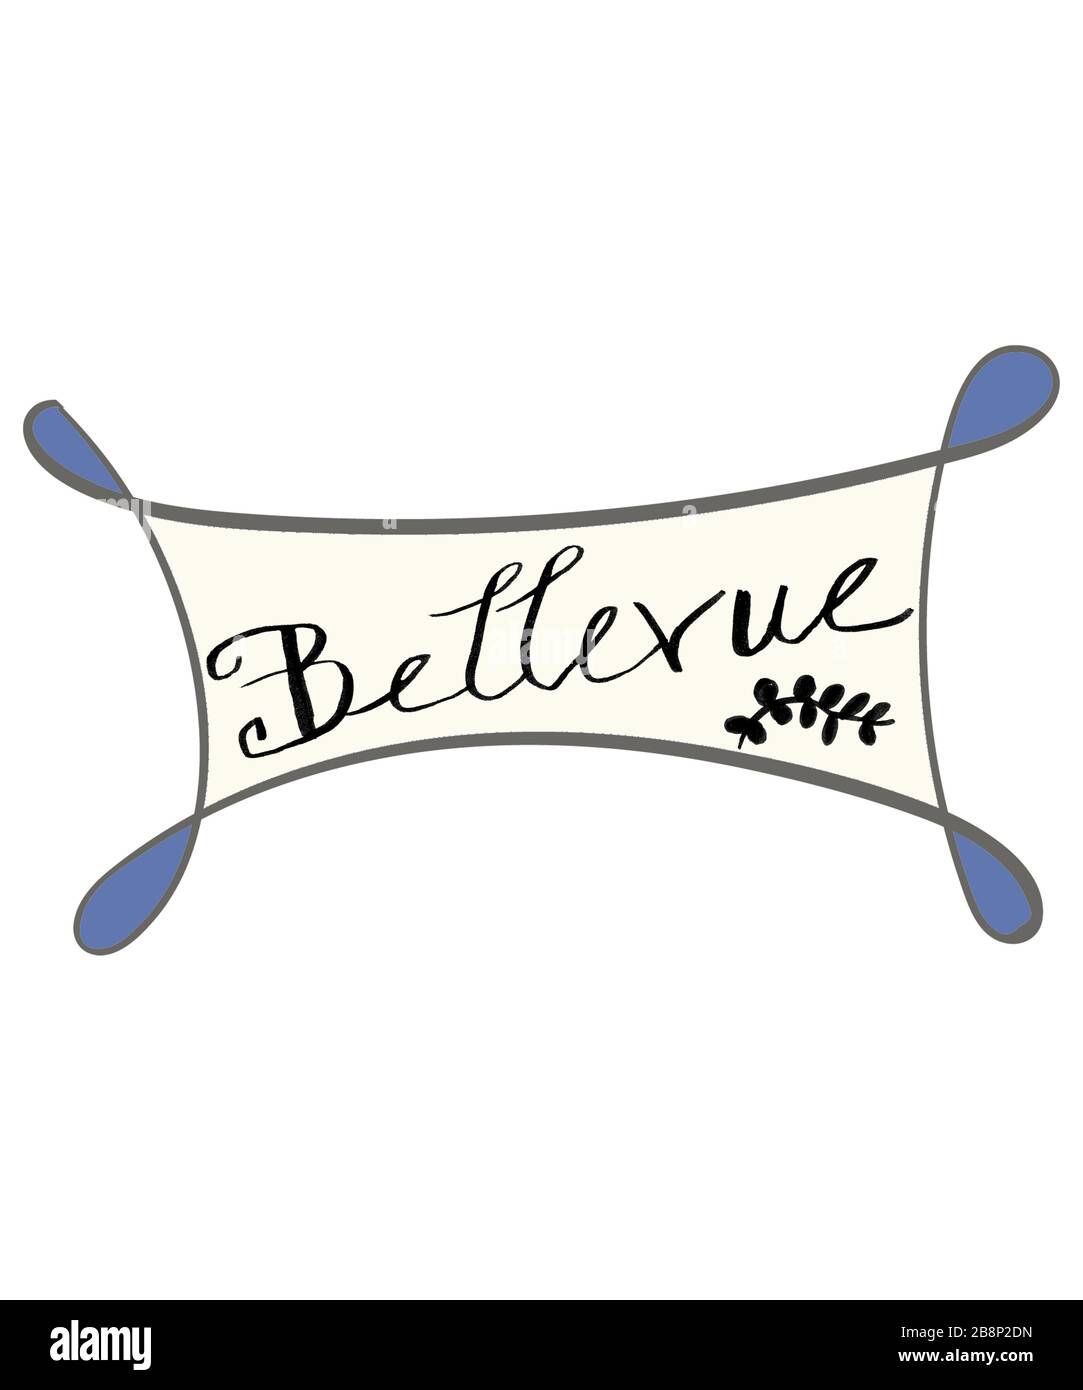 Bellevue handschriftlich beschriftete Gestaltung mit Scroll-Design. Bellevue ist eine Stadt oder Stadt in vielen Staaten und Nationen. Diese Grafik befindet sich auf einem weißen Hintergrund. Stockfoto